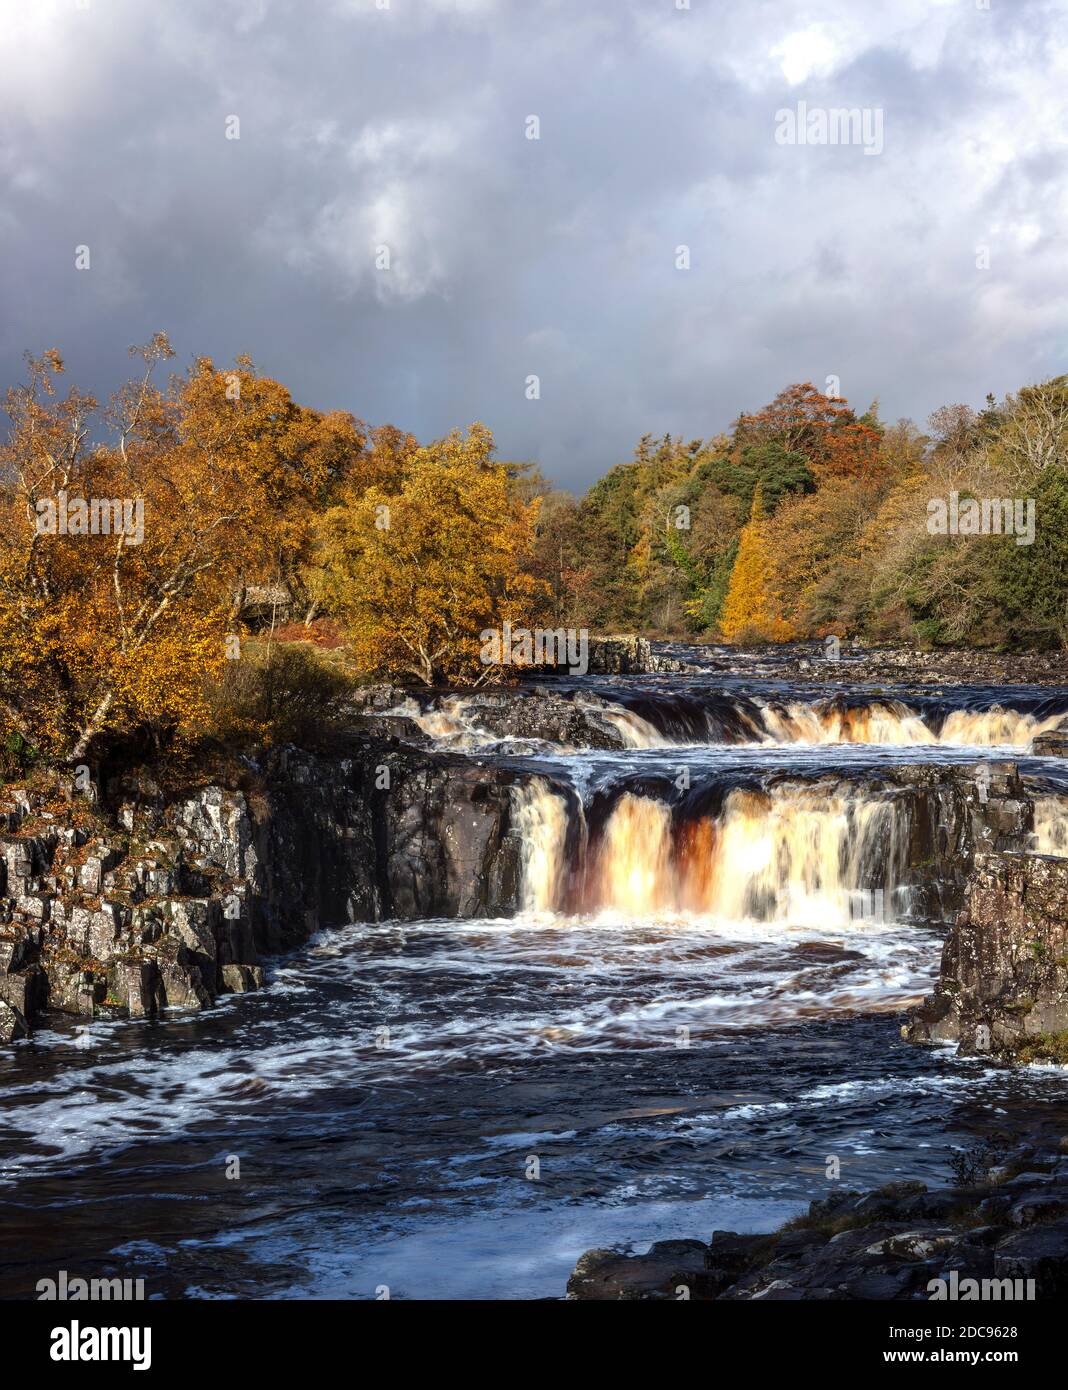 Chute d'eau de Low Force en automne, Bowles, Teesdale, comté de Durham, Angleterre, Royaume-Uni Banque D'Images